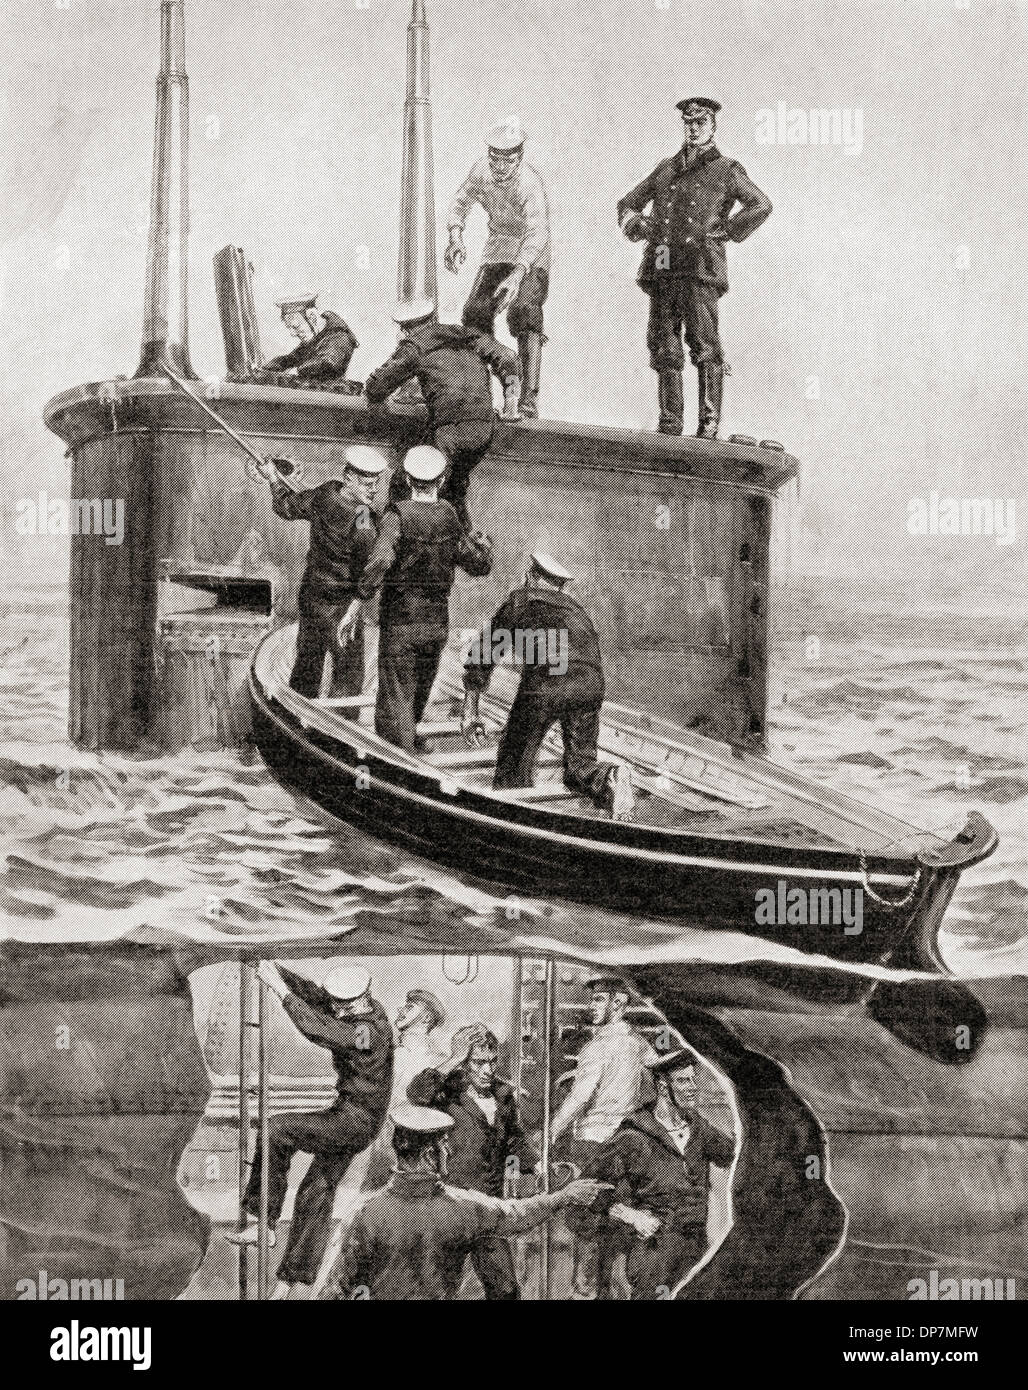 Les survivants du destroyer Allemand V184 sont secourus par le sous-marin britannique E4 après la bataille de Heligoland Bight, 28 Août Banque D'Images